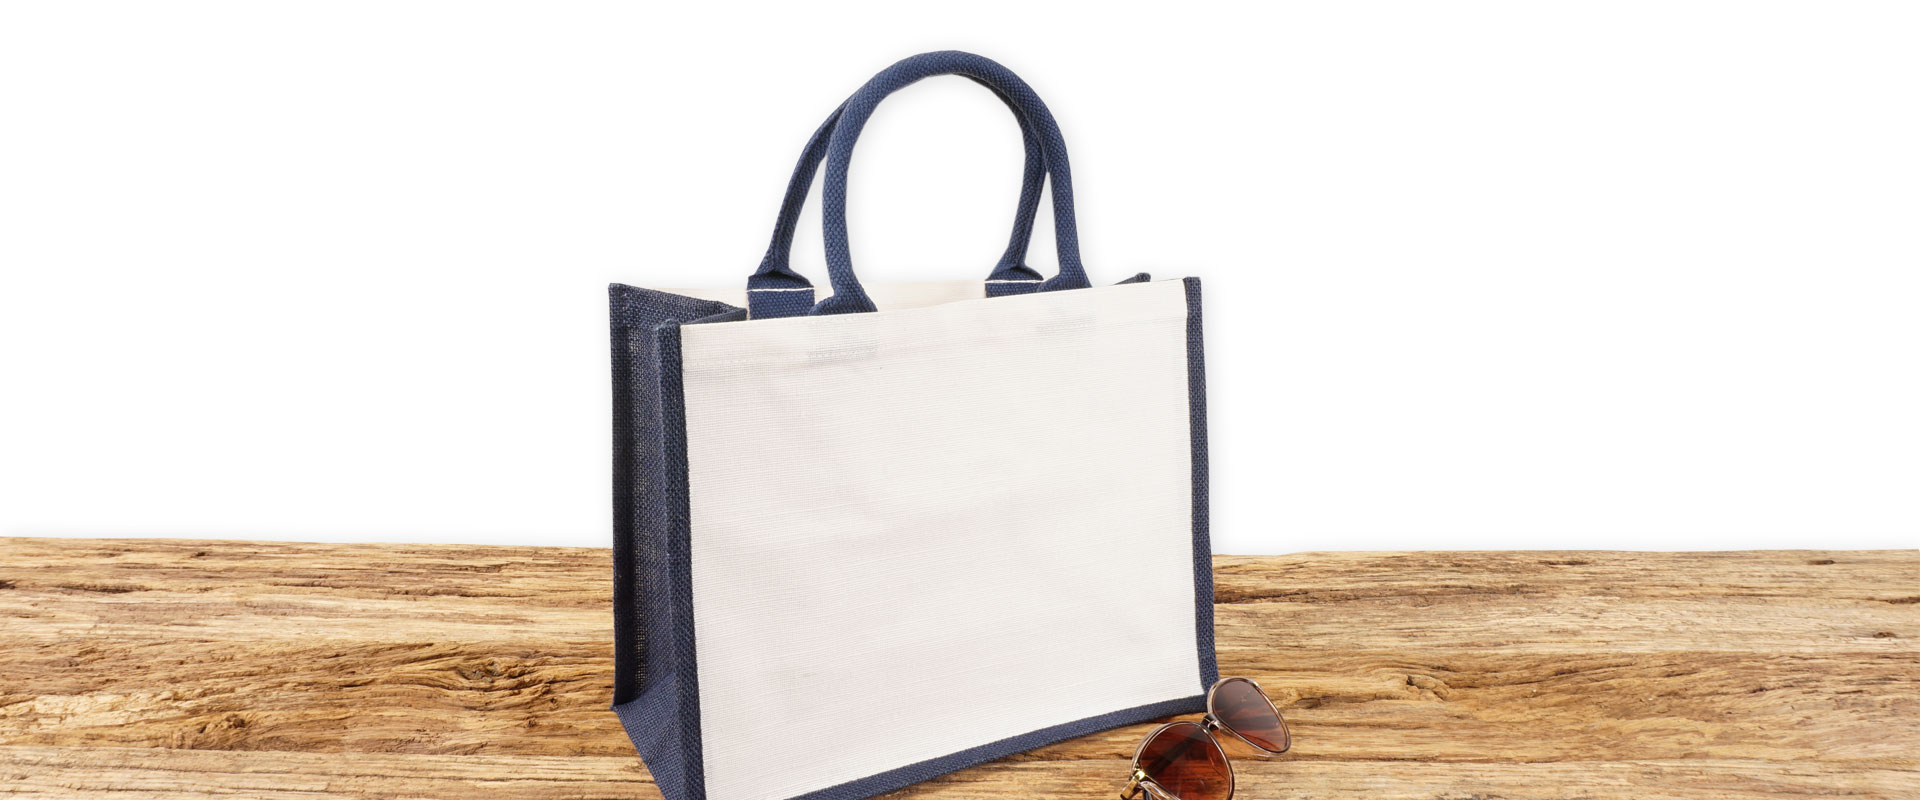 Einkaufstasche aus Jute und Baumwolle zum Bedrucken, klein, blau-weiß mit Seiten-Bodenfalte und mit kurzen runden Tragegriffen auf Holz.